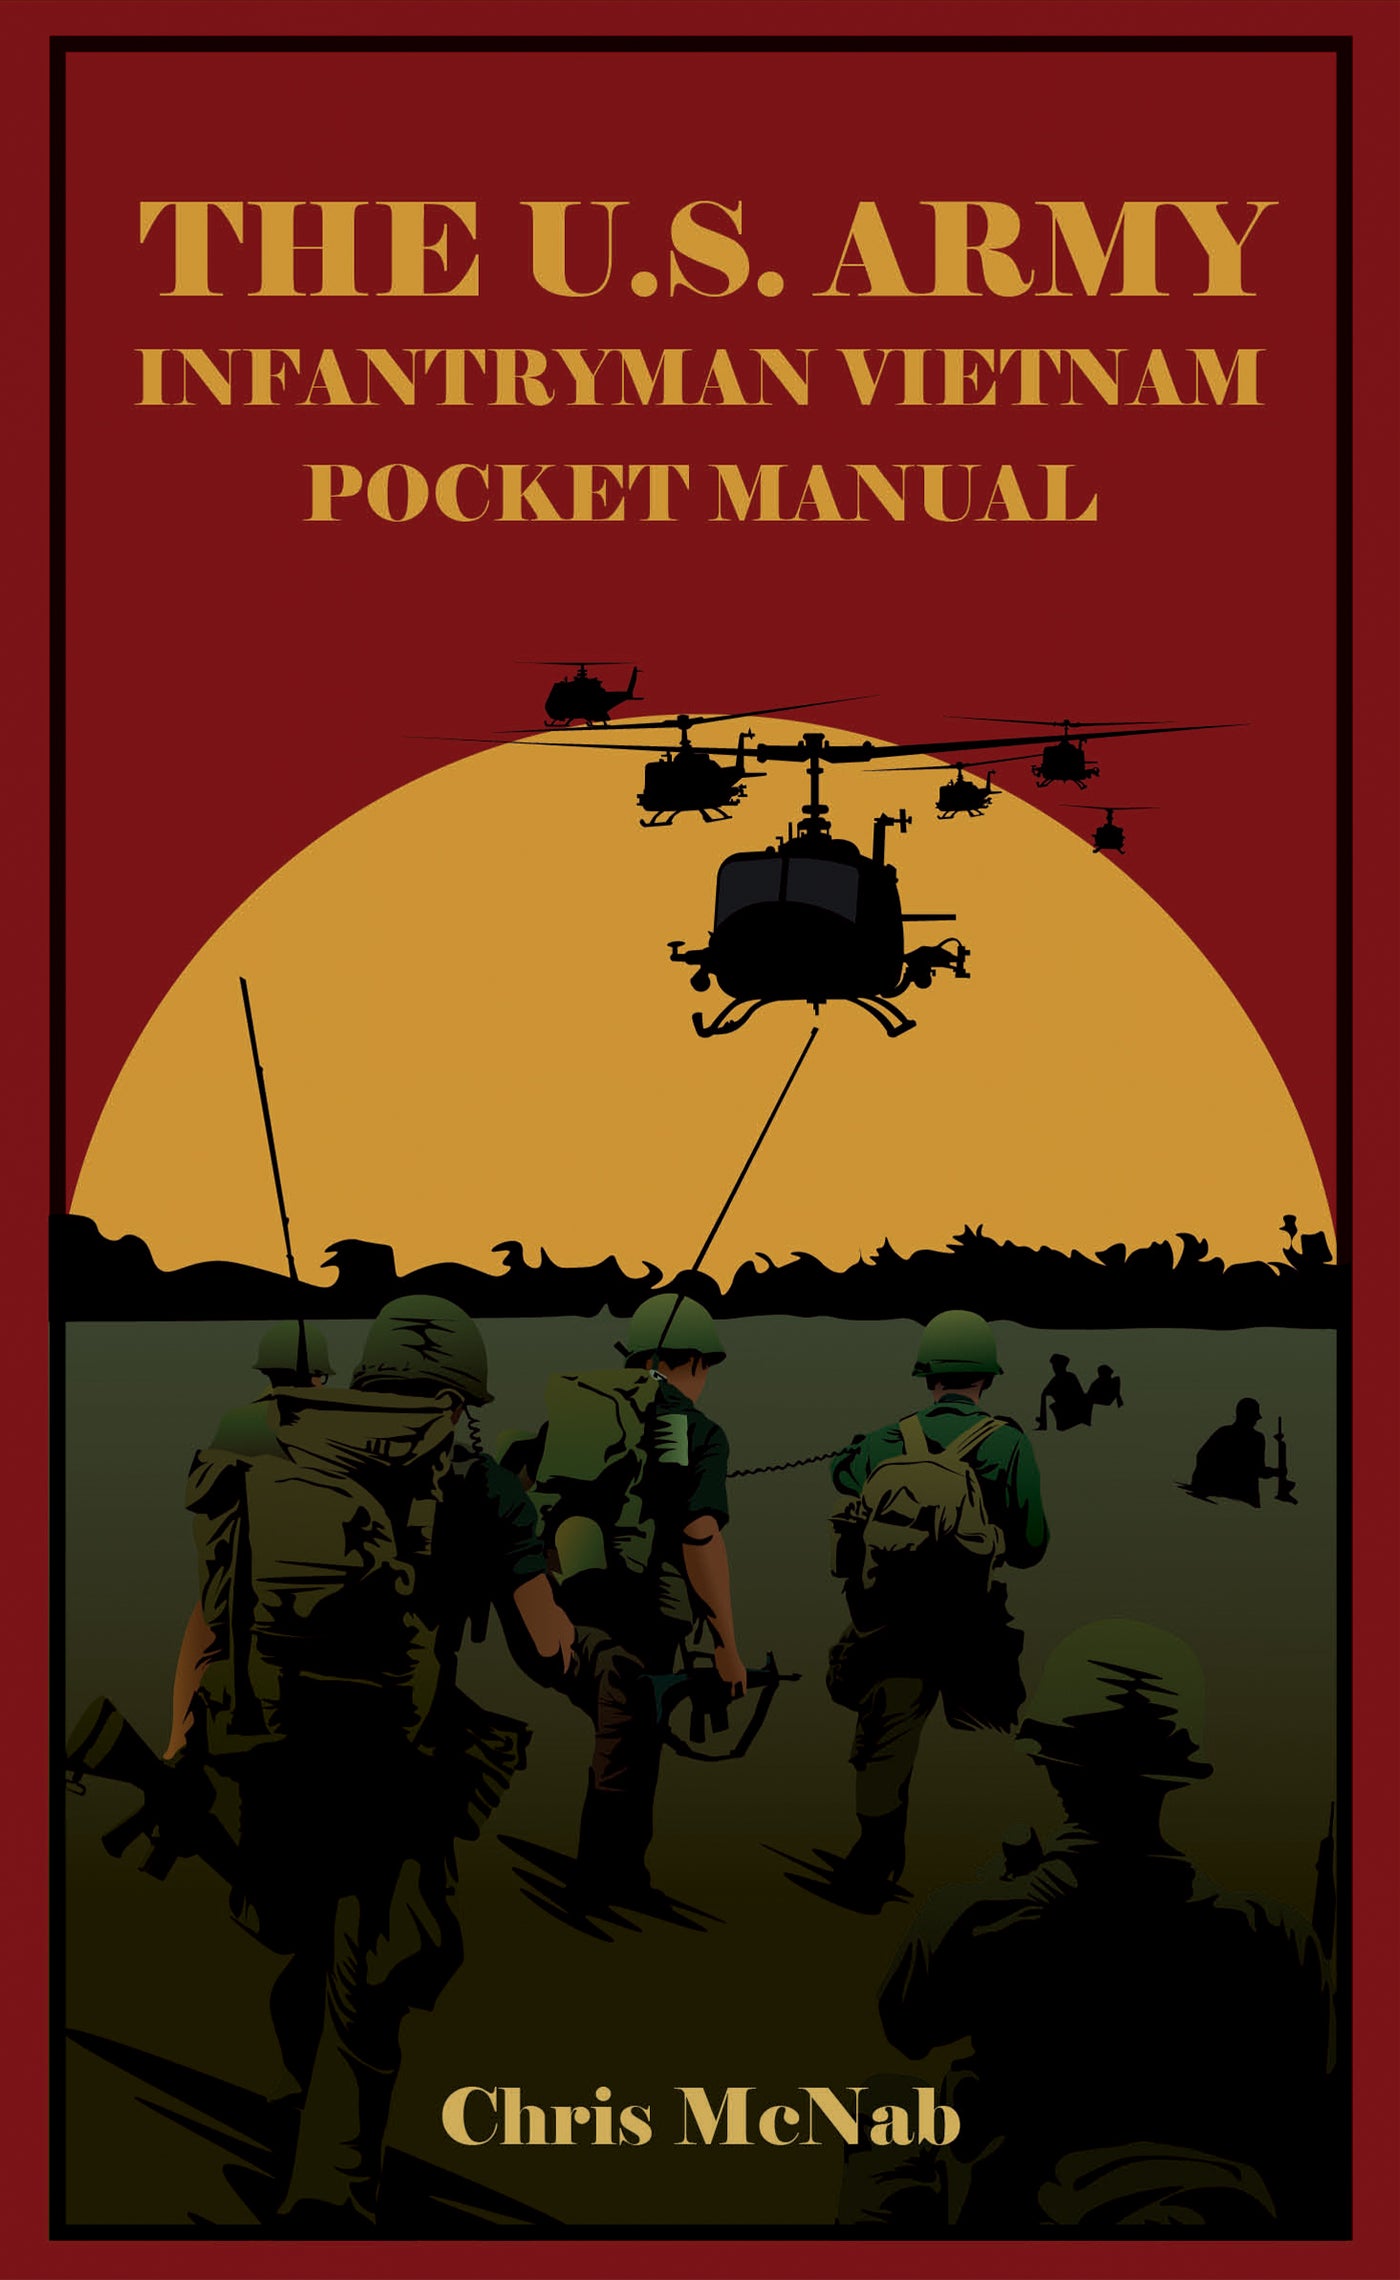 The U.S. Army Infantryman Vietnam Pocket Manual